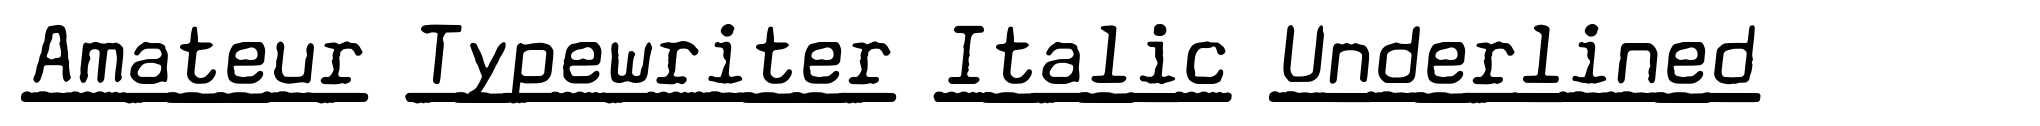 Amateur Typewriter Italic Underlined image